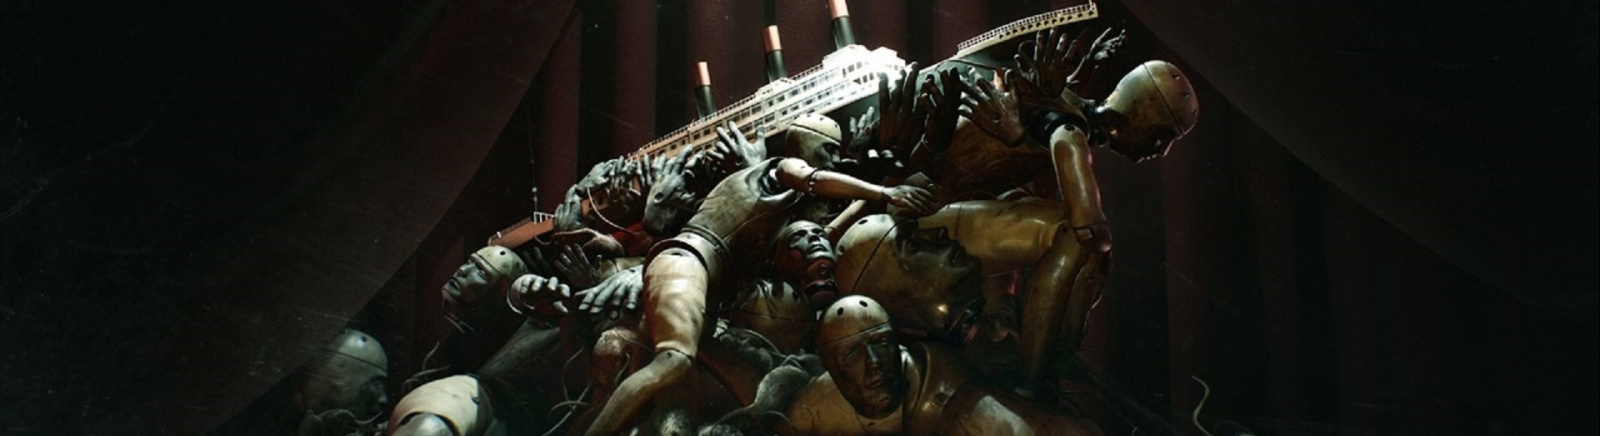 Дата выхода Layers of Fear 2 (Project Melies)  на PC, PS4 и Xbox One в России и во всем мире